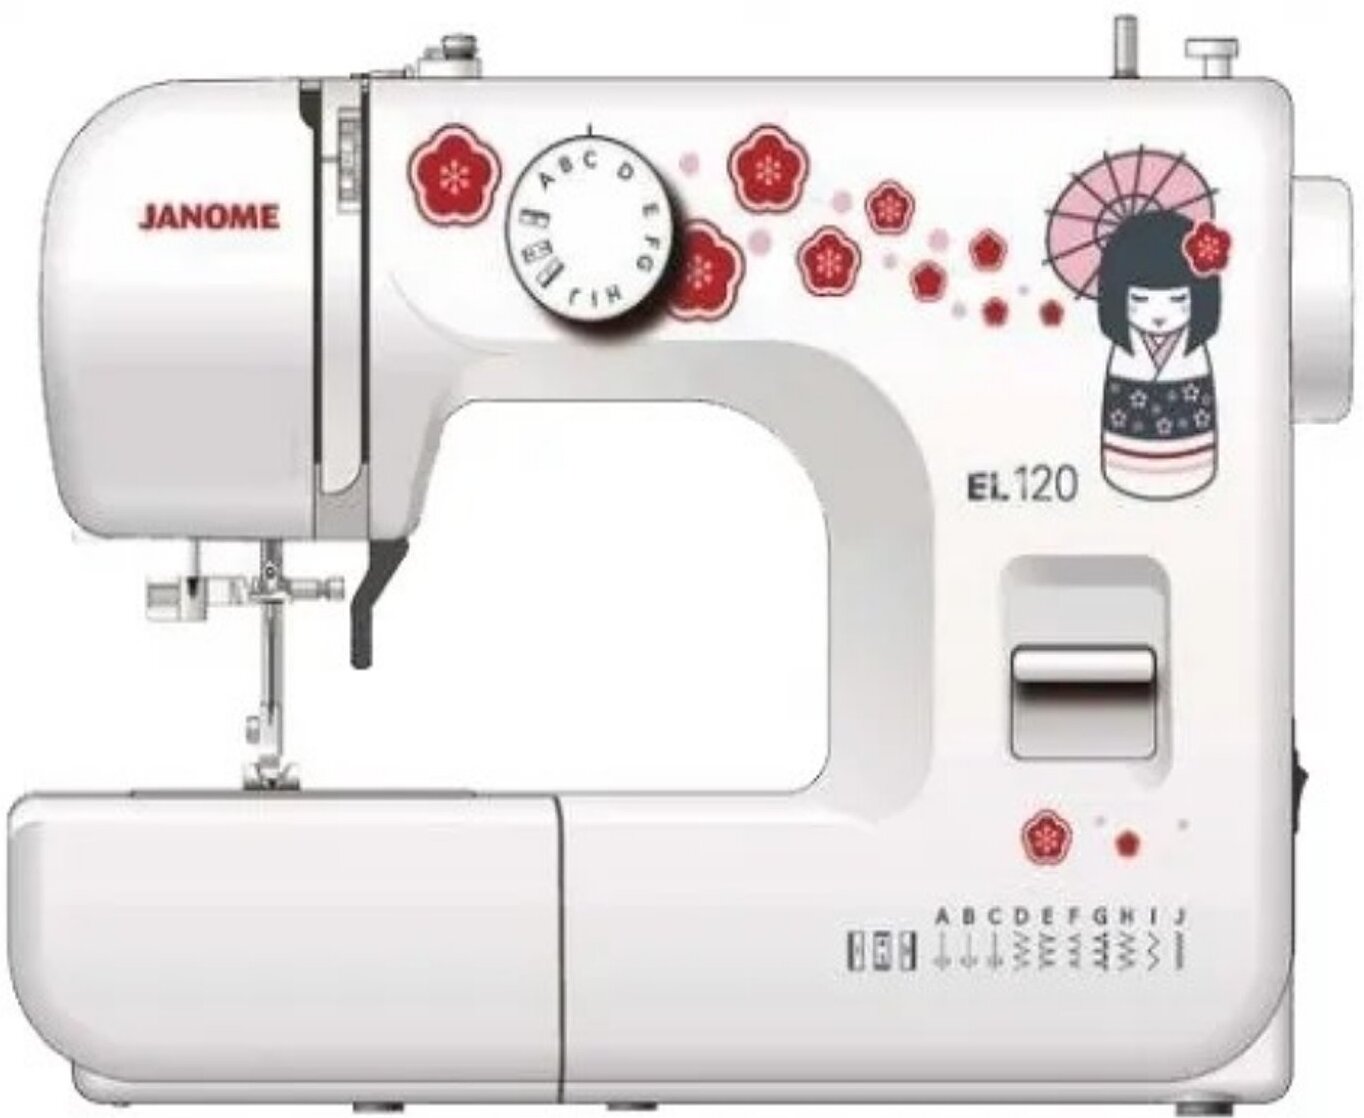 Швейные машинки ставрополь. Швейная машина Janome el-120. Швейная машина Janome TC 1216s. Швейная машина Janome sk13. Швейная машина Janome el5465.